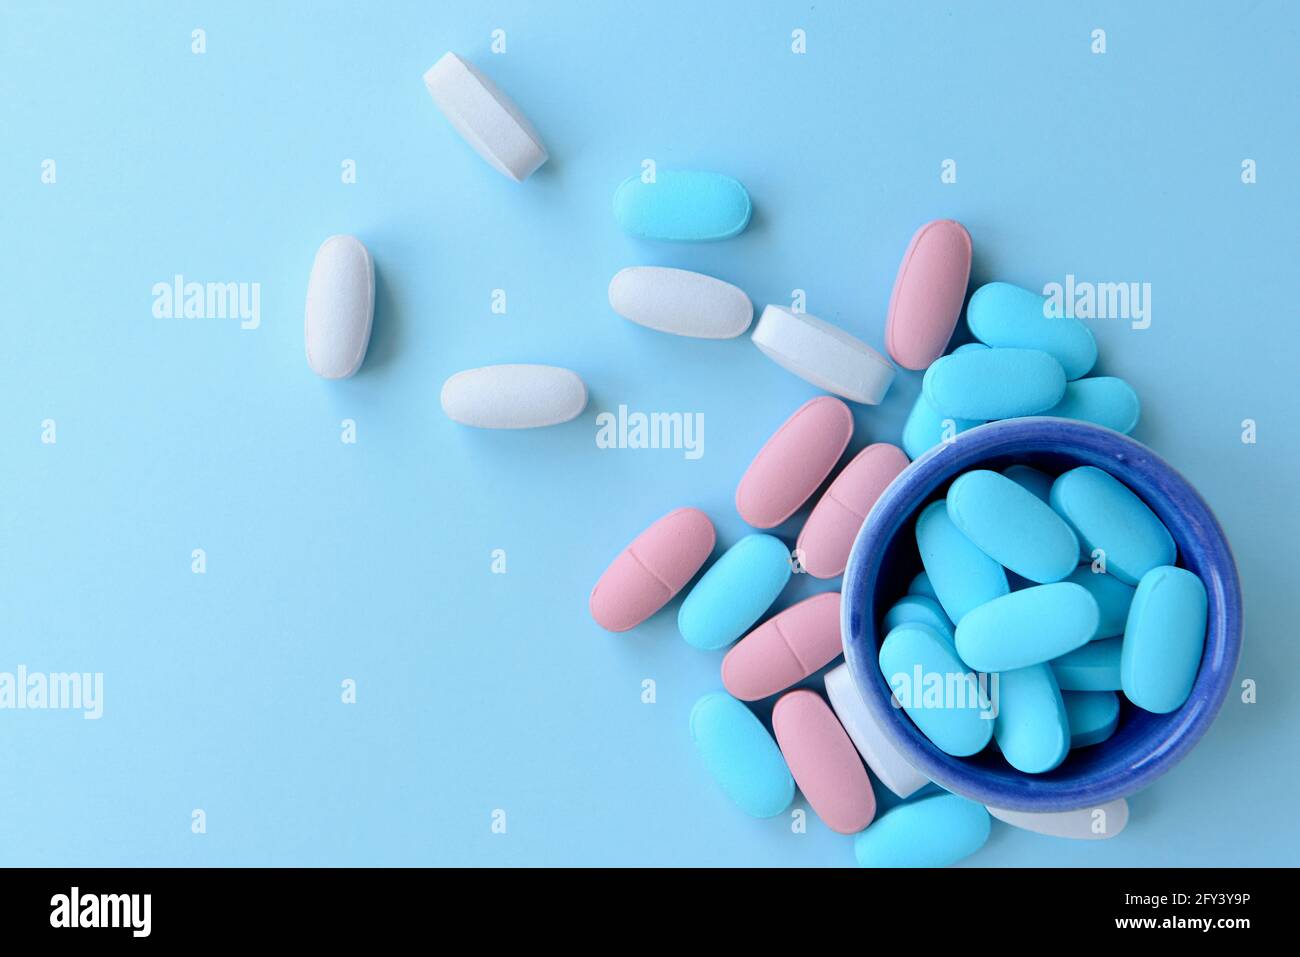 Concetto medico / sanitario: Alcune capsule mediche colorate Foto Stock